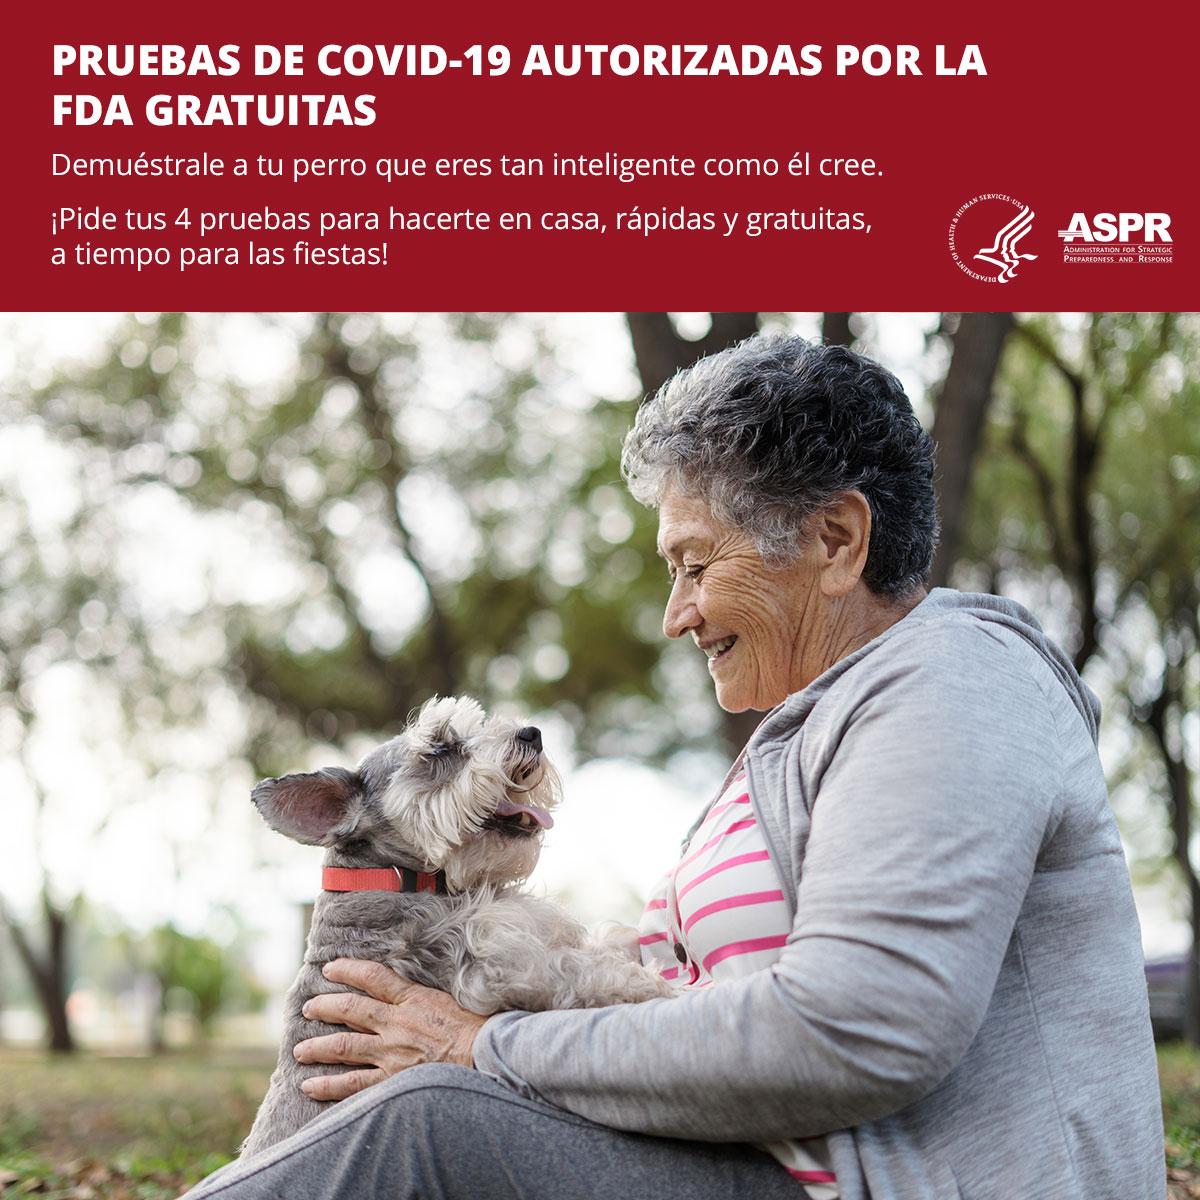 Pruebas de COVID-19 Autorizadas por la FDA gratuitas. Mujer con su perro.